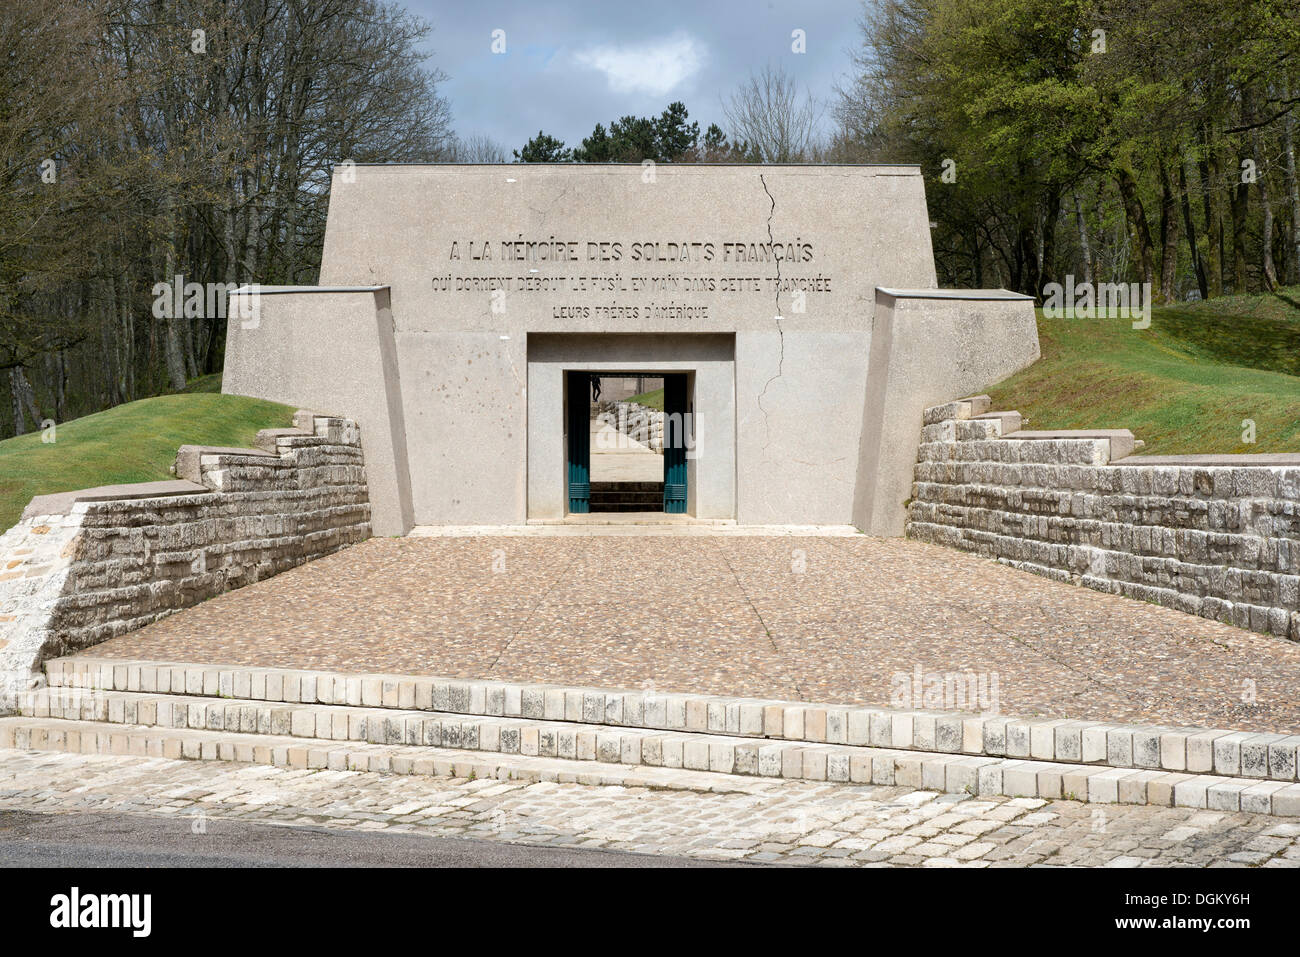 Portal of the memorial, bayonet trench, Battle of Verdun, First World War, Verdun, Lorraine, France, Europe Stock Photo